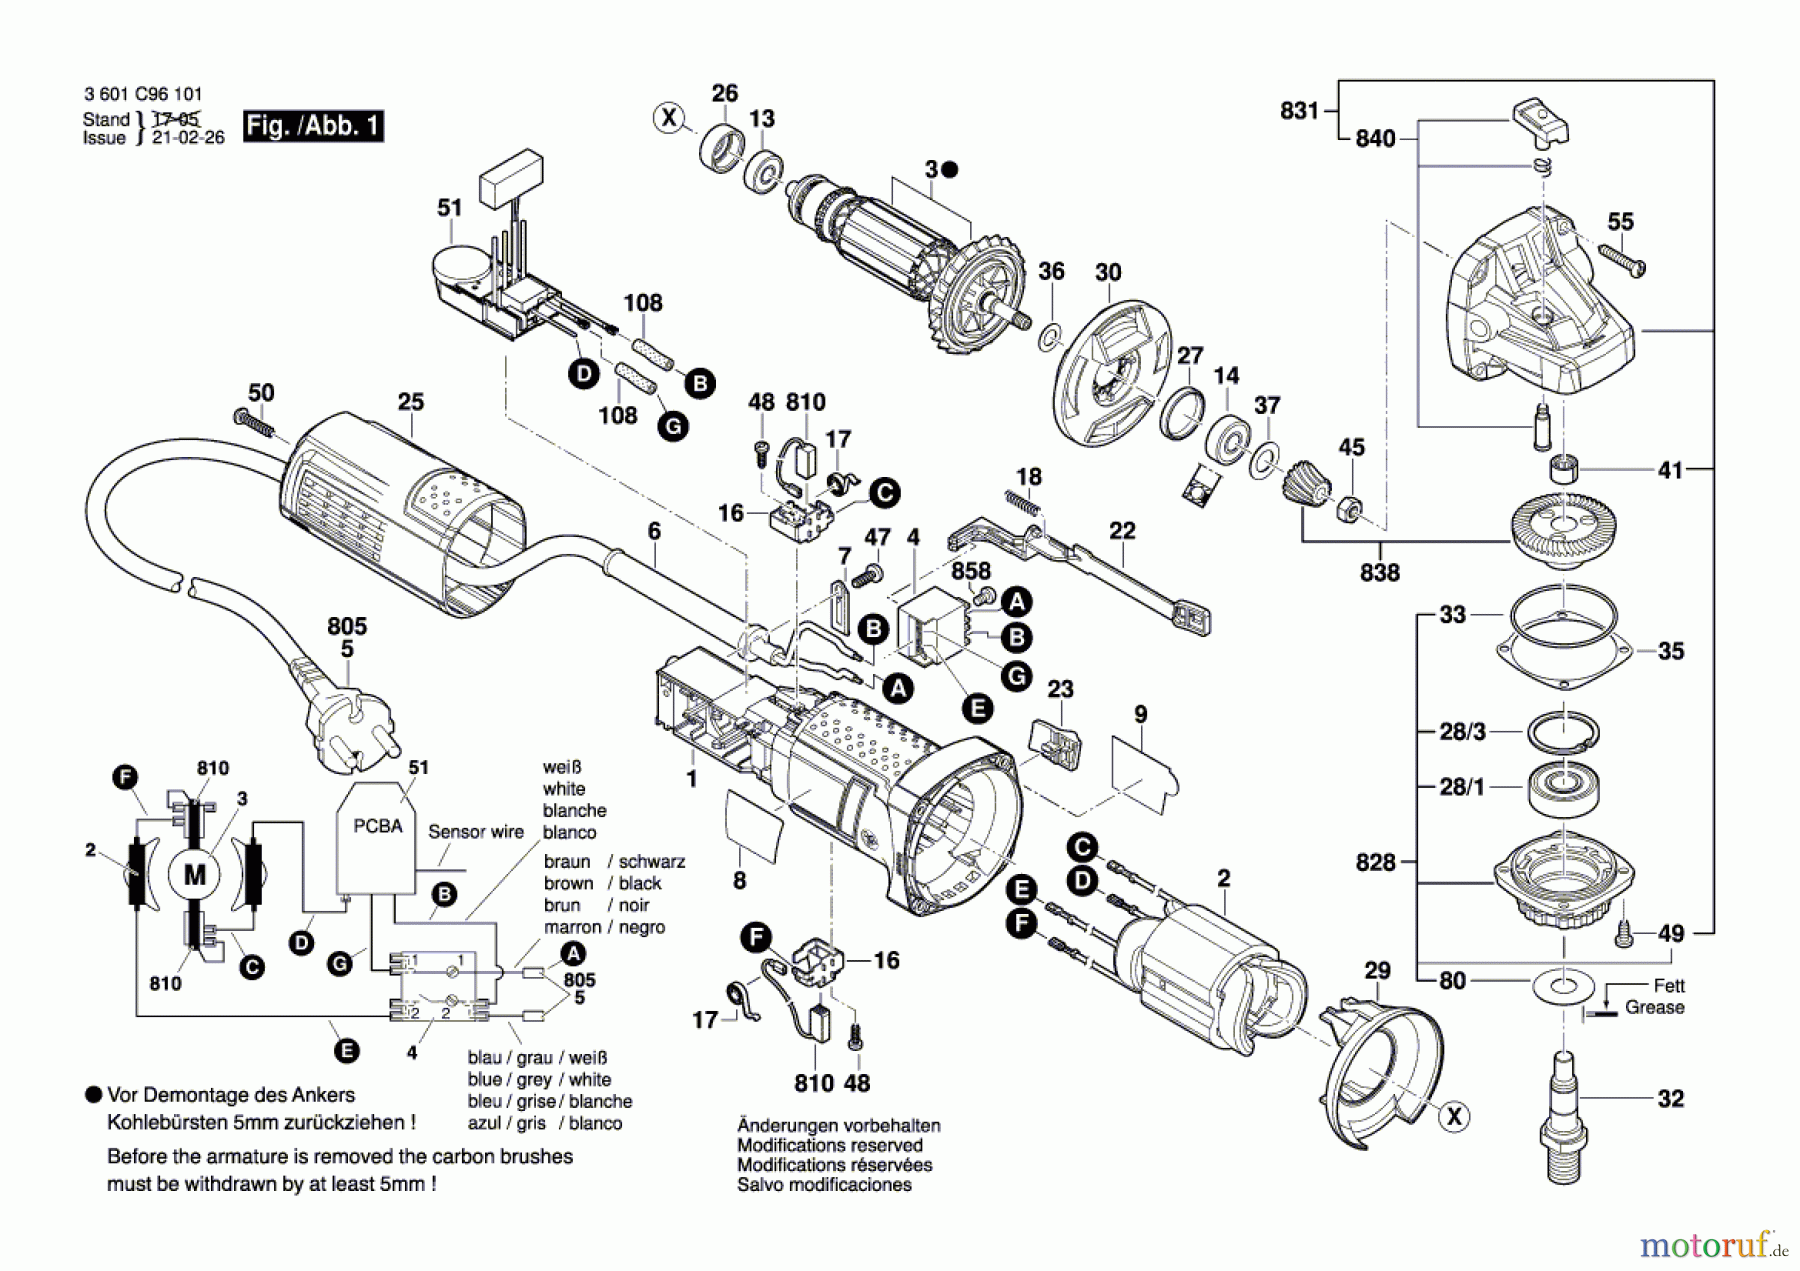  Bosch Werkzeug Winkelschleifer GWS 9-125 S Seite 1